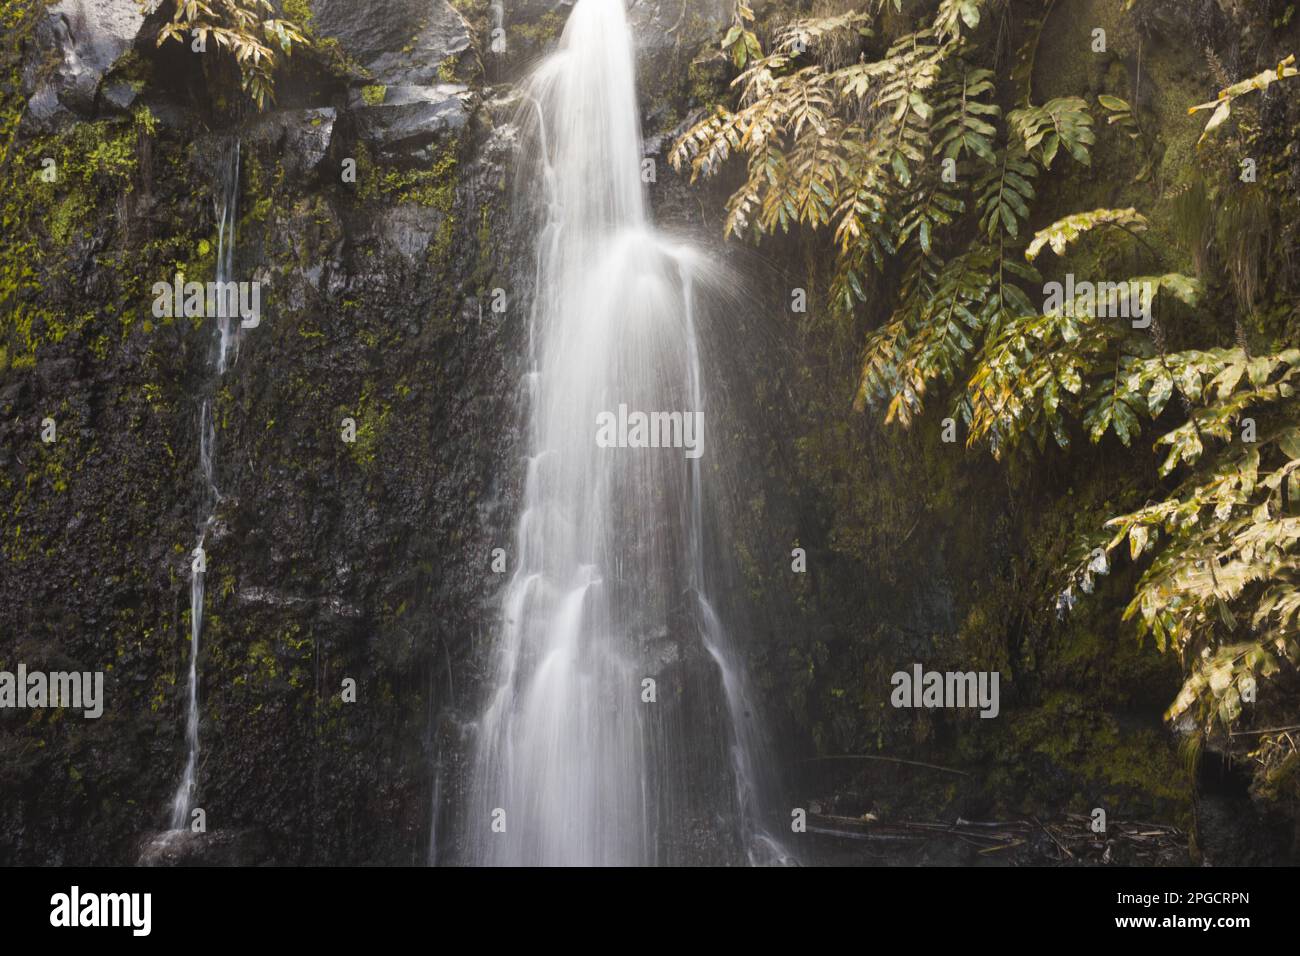 Vista pittoresca della cascata che cade dalla cima attraverso la verde collina della foresta tropicale mentre l'acqua lattea vaporizza nelle giornate di sole nella regione delle Azzorre Foto Stock